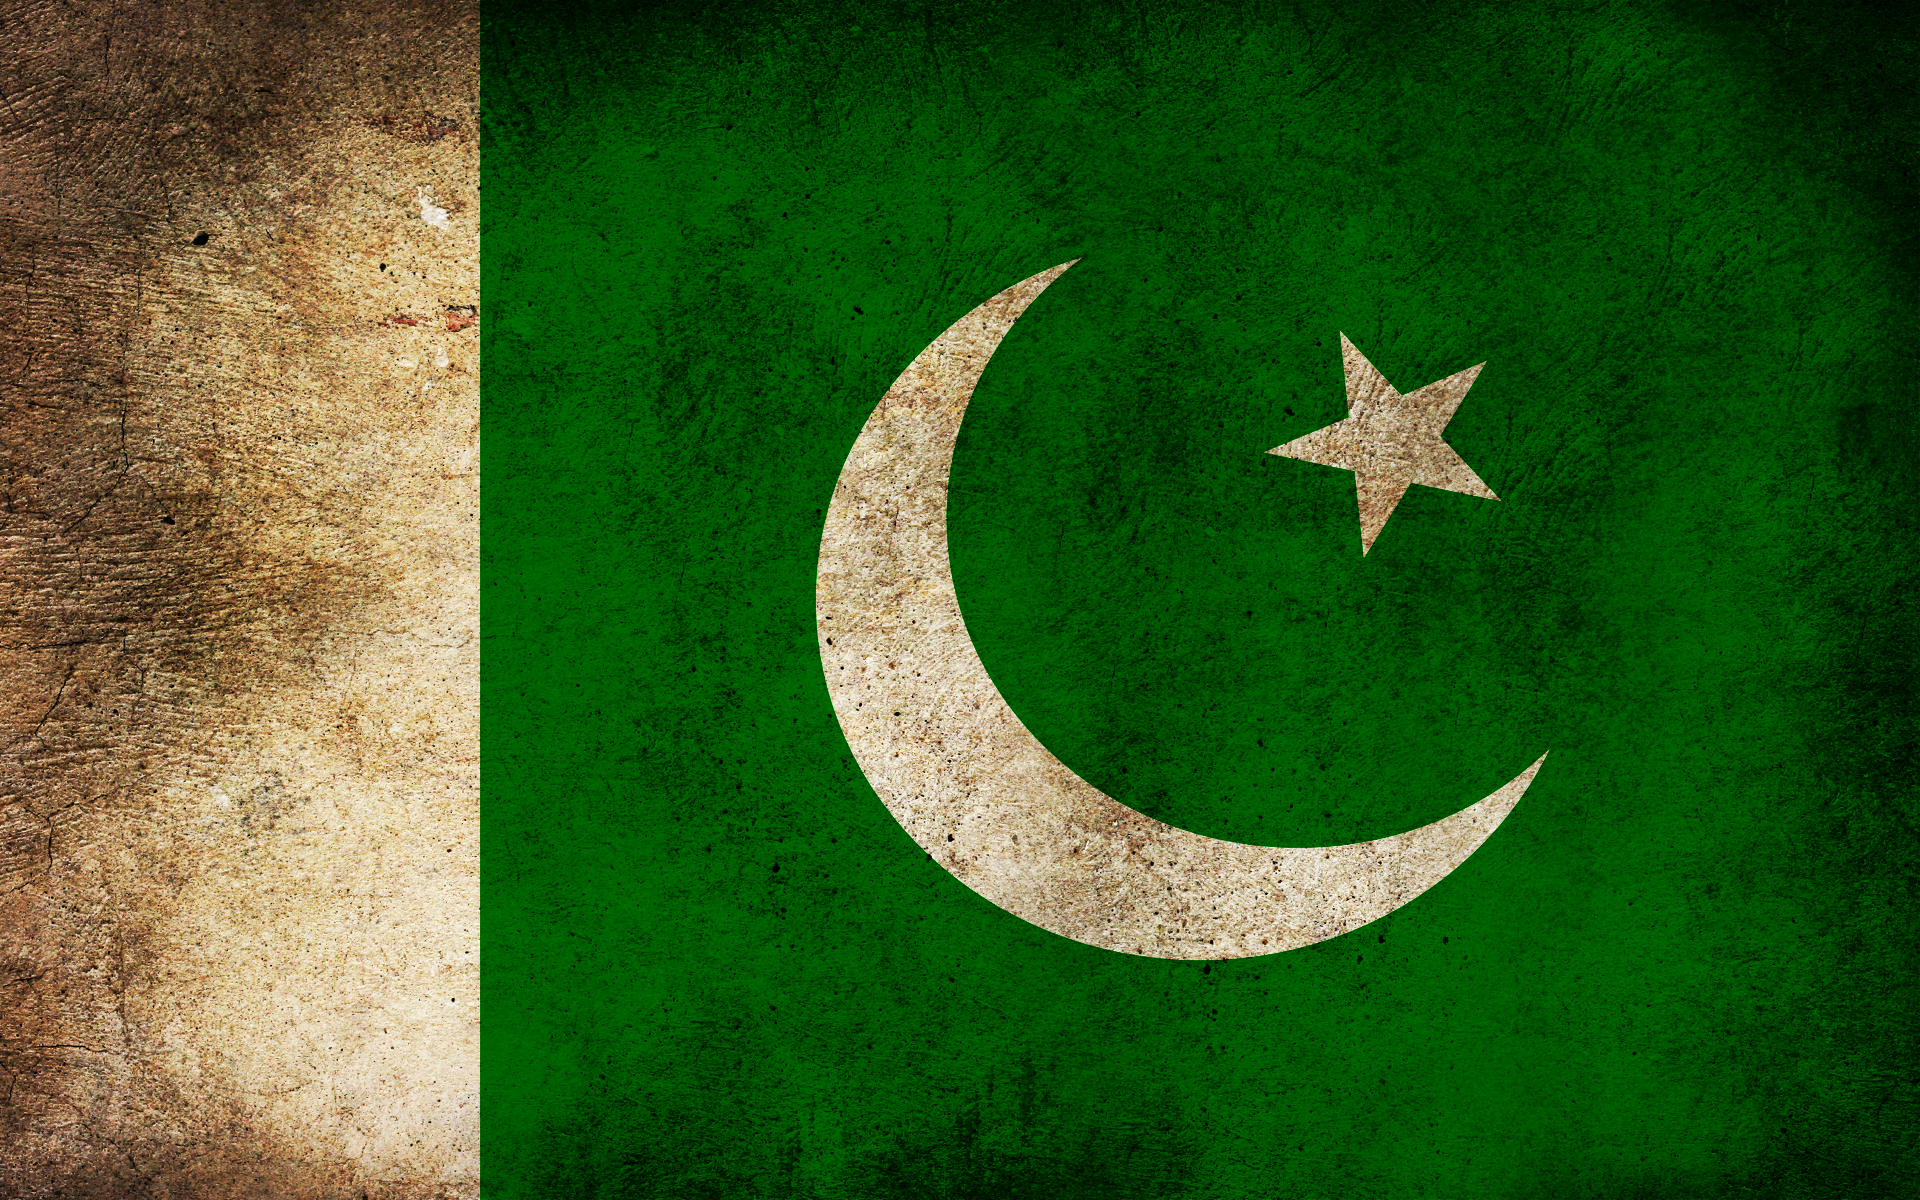 fond d'écran du drapeau du pakistan,croissant,vert,drapeau,police de caractère,symbole